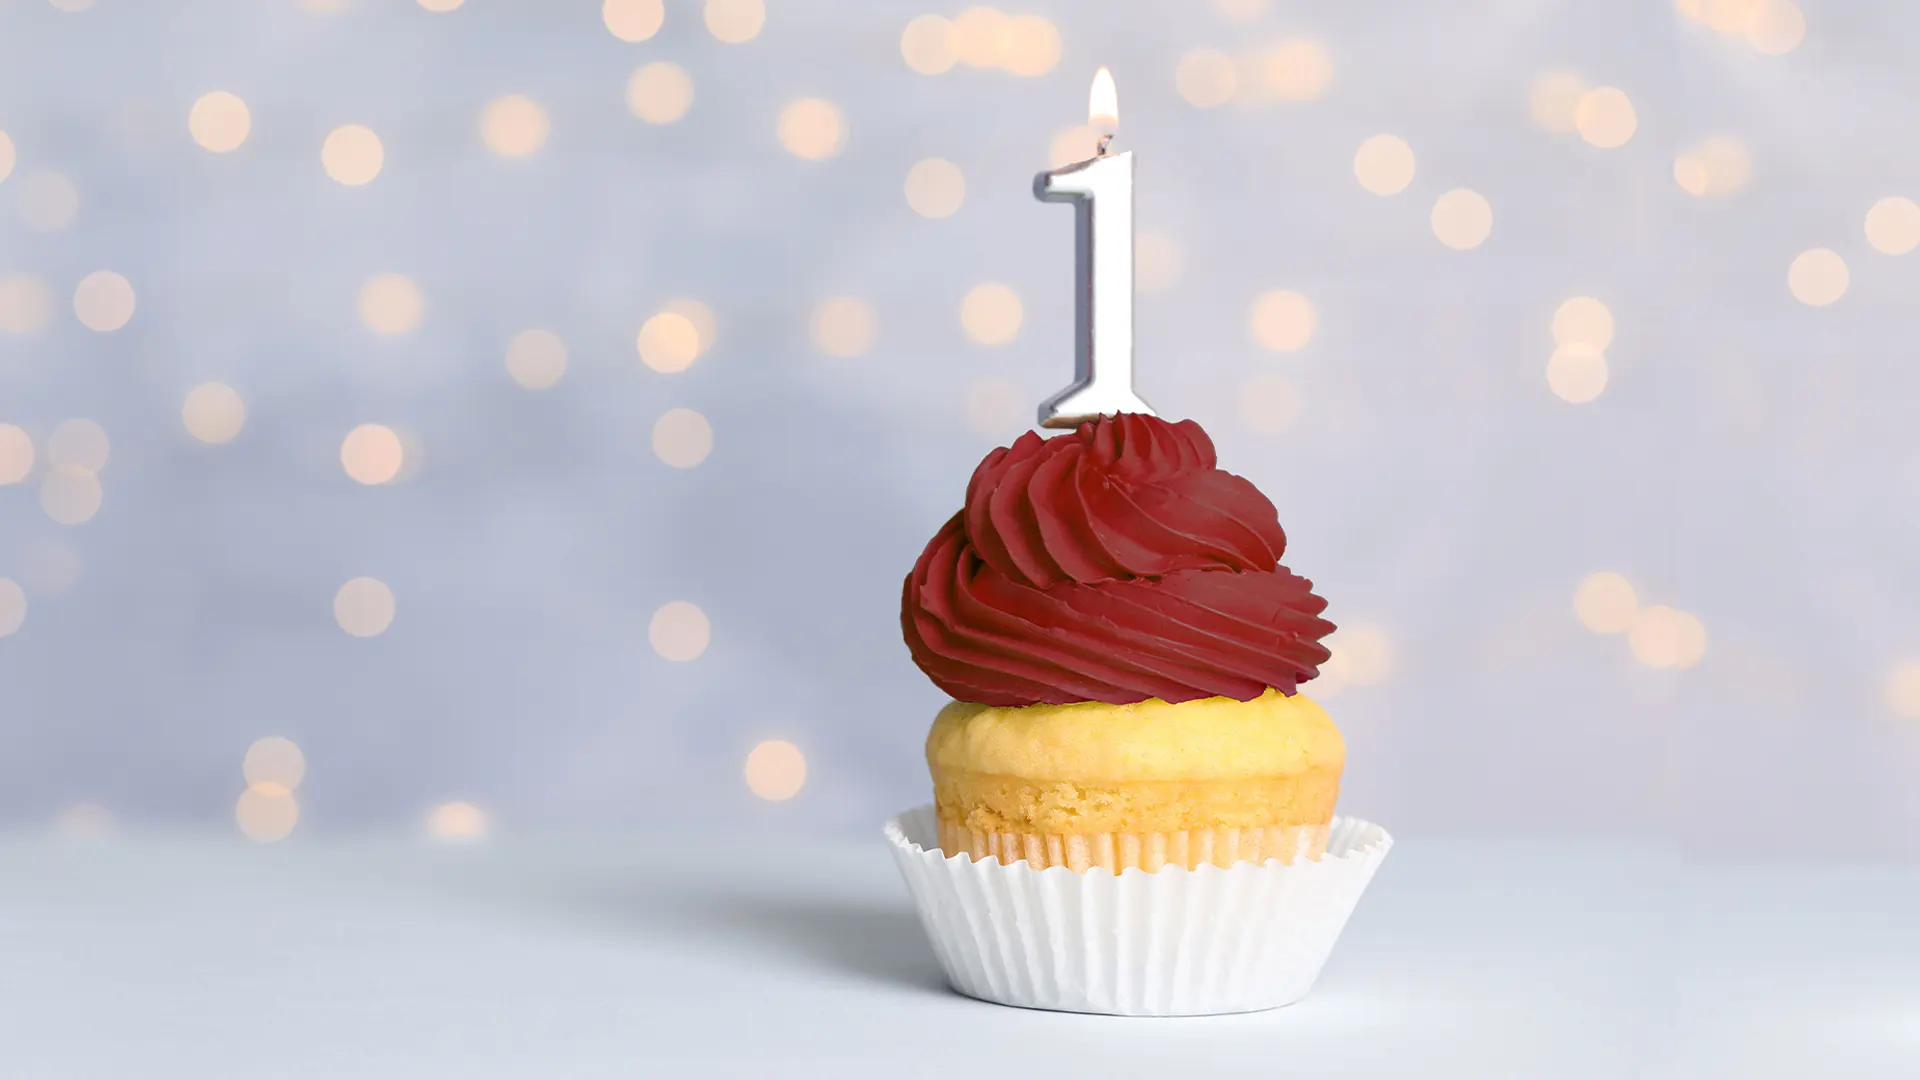 Cupcake mit Kerze zum 1-jährigen Jubiläum